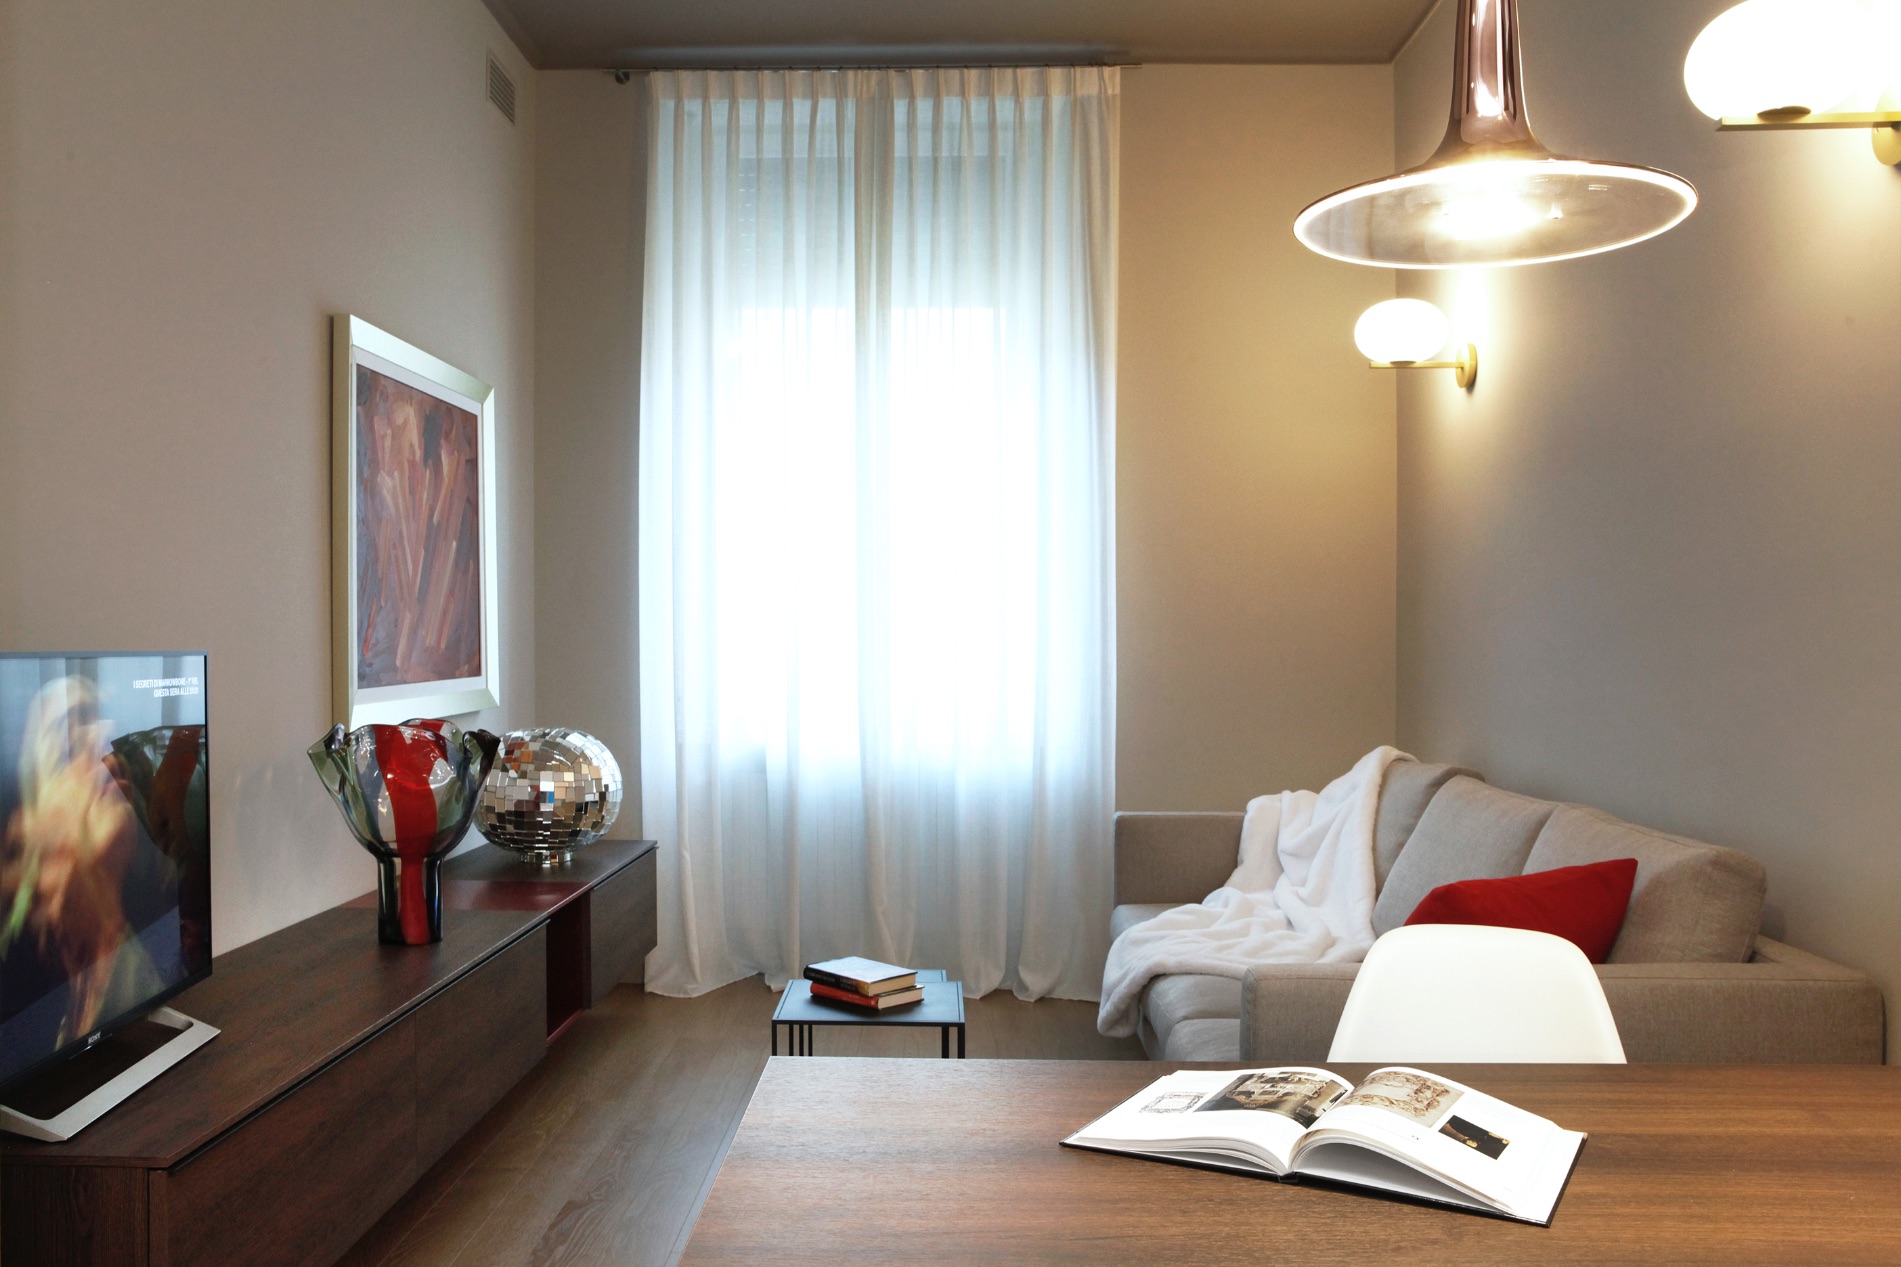 Appartamento a Bergamo, Progetto di interni, 60mq

Cliente privato, 2019-2020